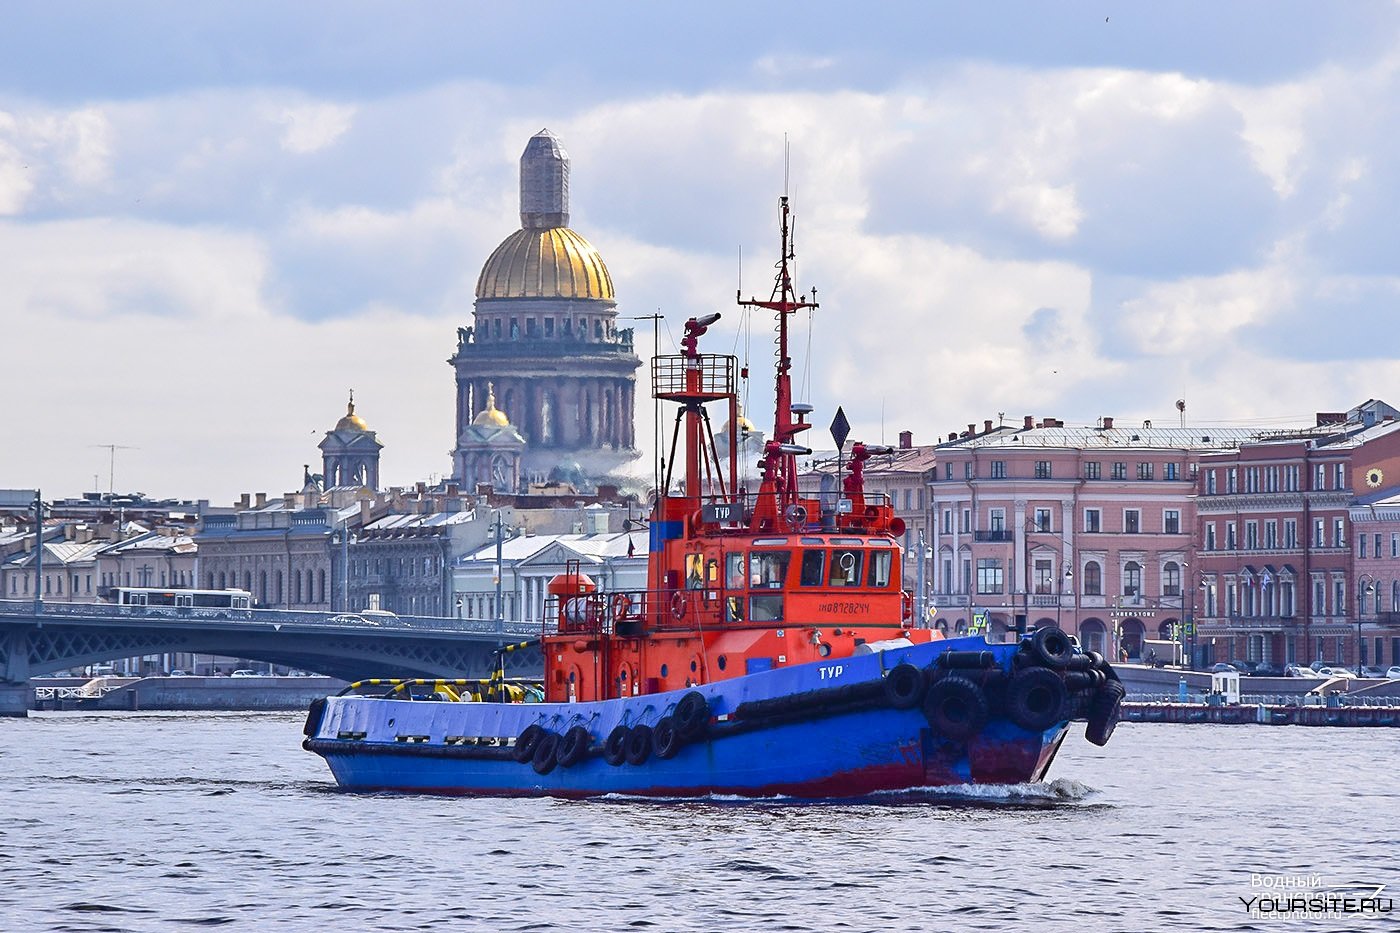 Автономном спб. Речной транспорт Питер. Водный транспорт Санкт-Петербурга баржи. Внутренний Водный транспорт.